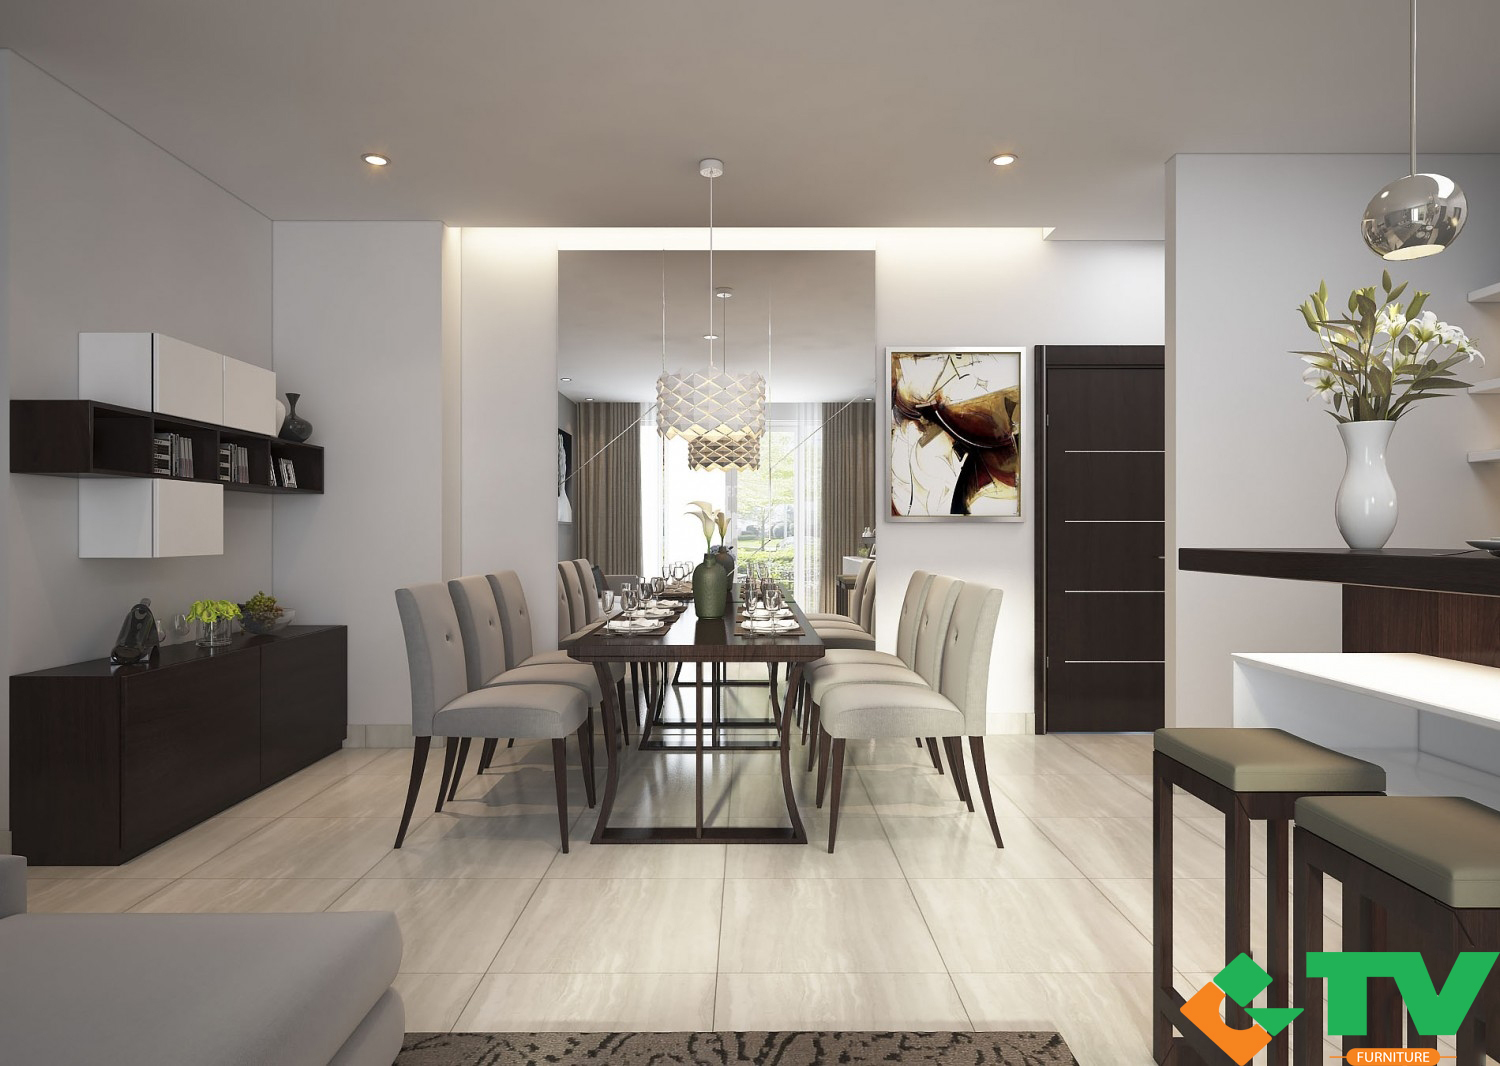 Bạn đã có ý tưởng để thiết kế nội thất cho căn hộ chung cư của mình chưa?